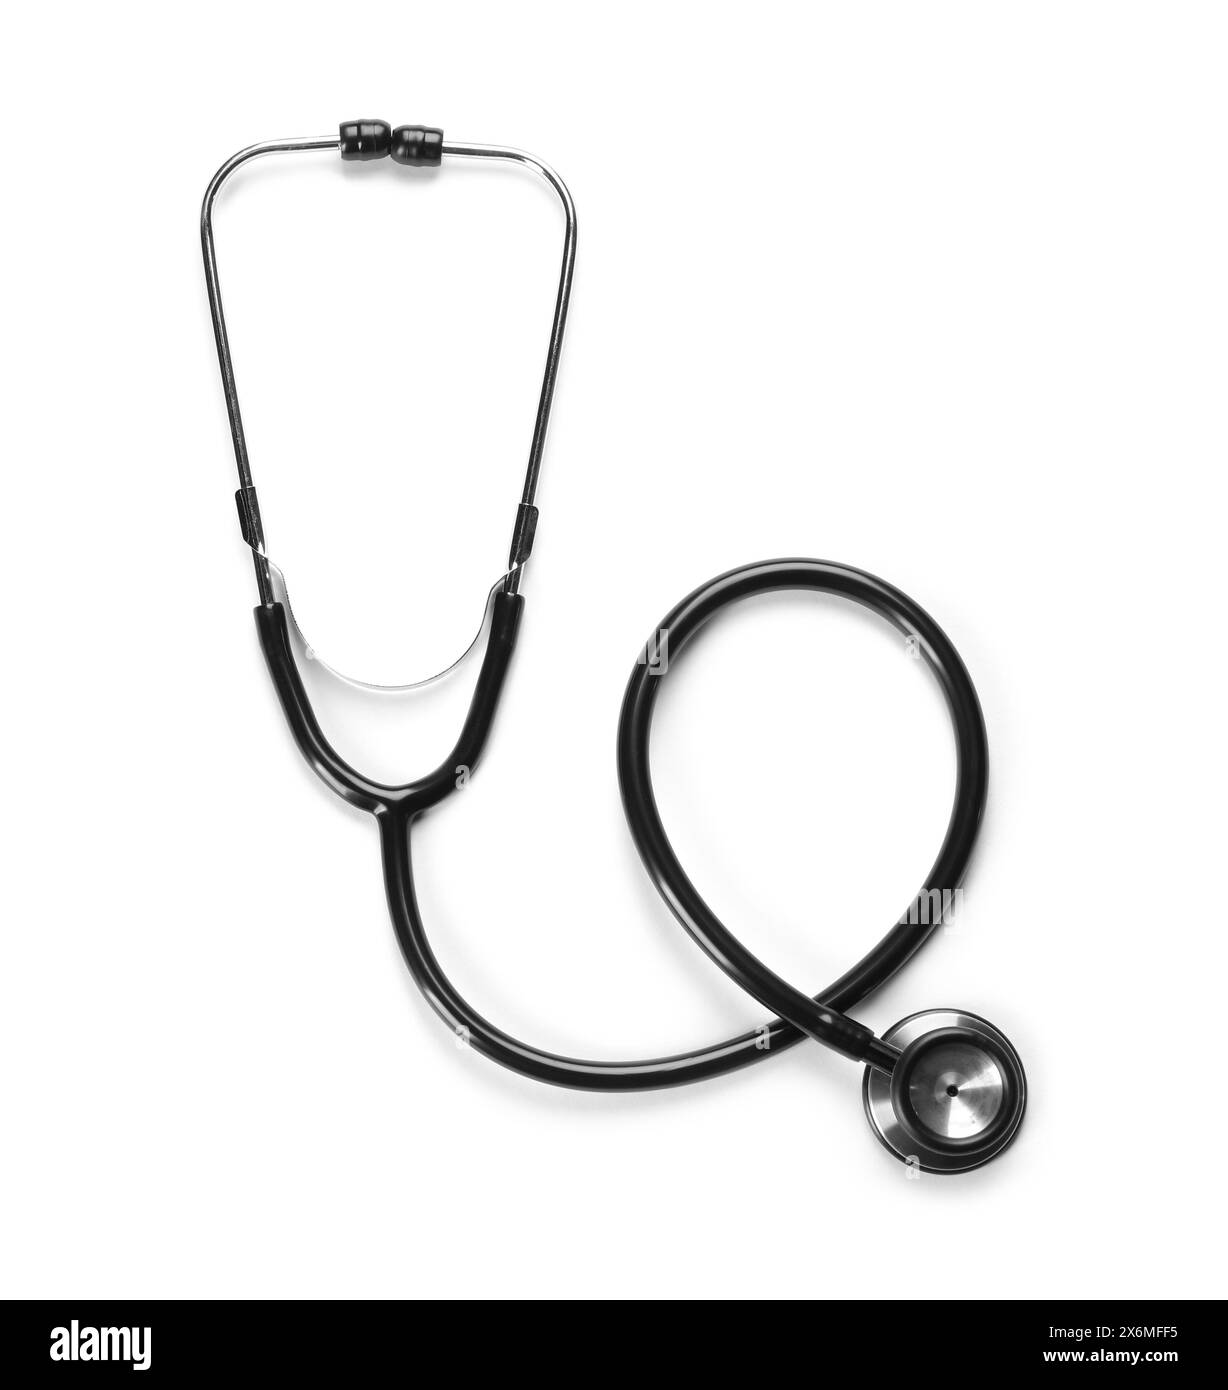 Neues Stethoskop auf weißem Hintergrund, Draufsicht. Medizinisches Instrument Stockfoto